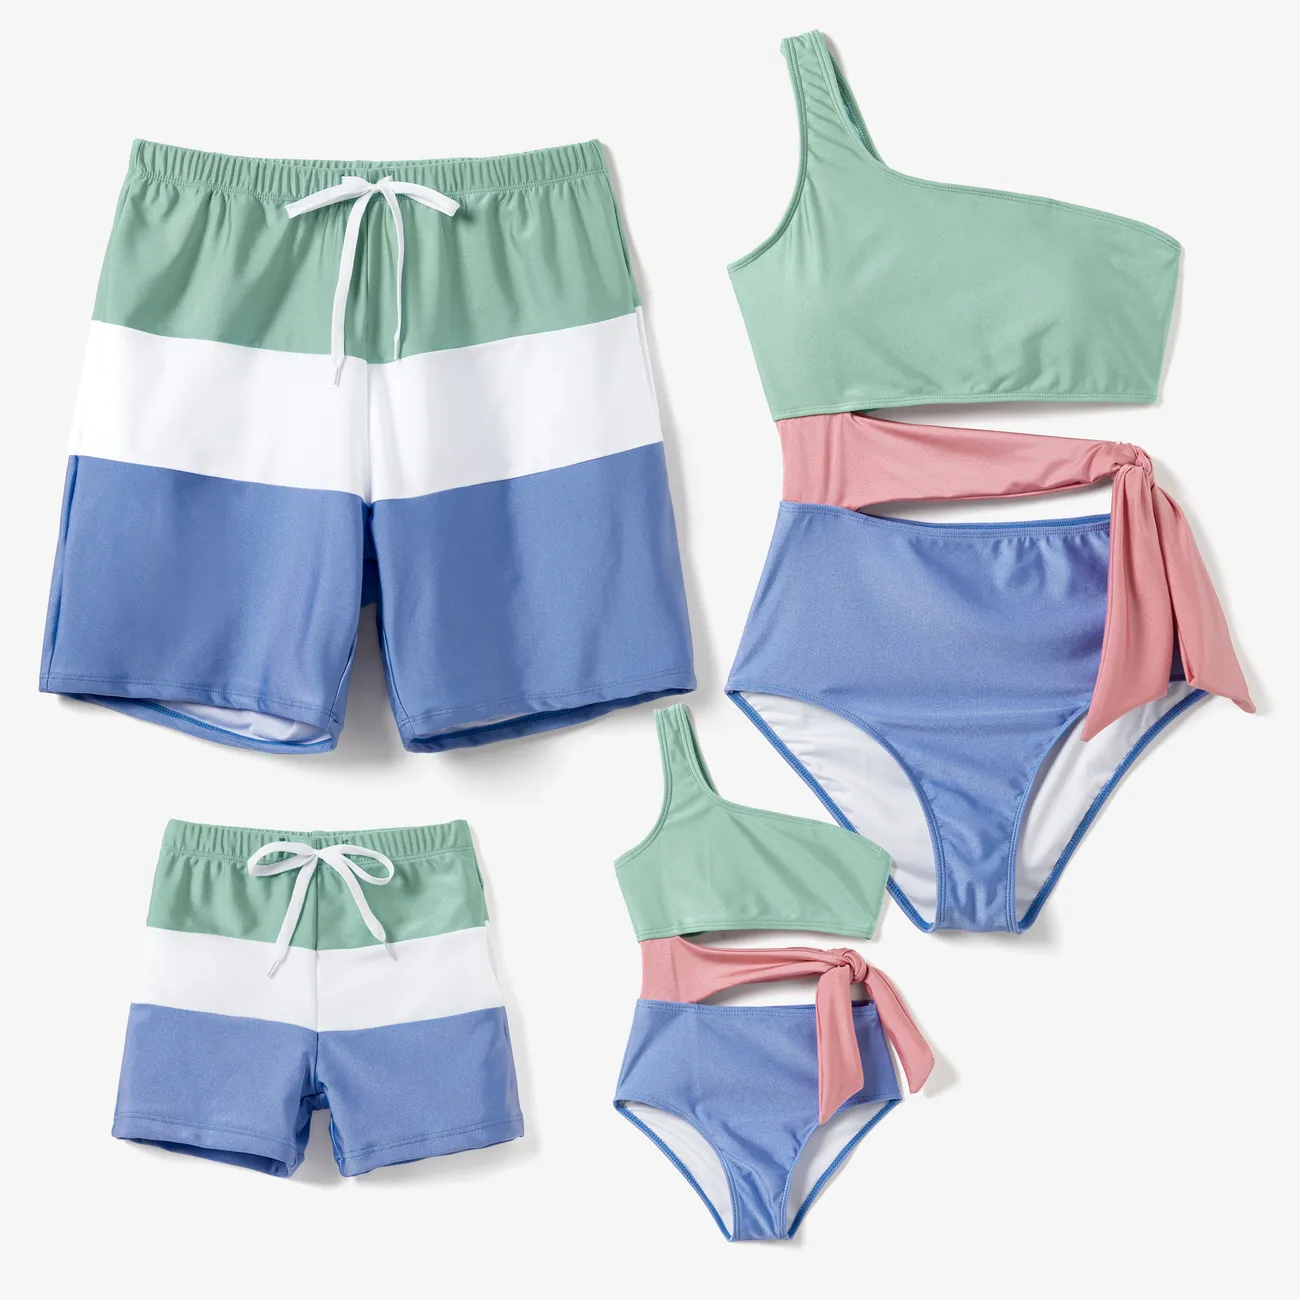 ملابس السباحة إطلالة العائلة للجنسين خياطة النسيج لون سادة كتلة اللون big image 1